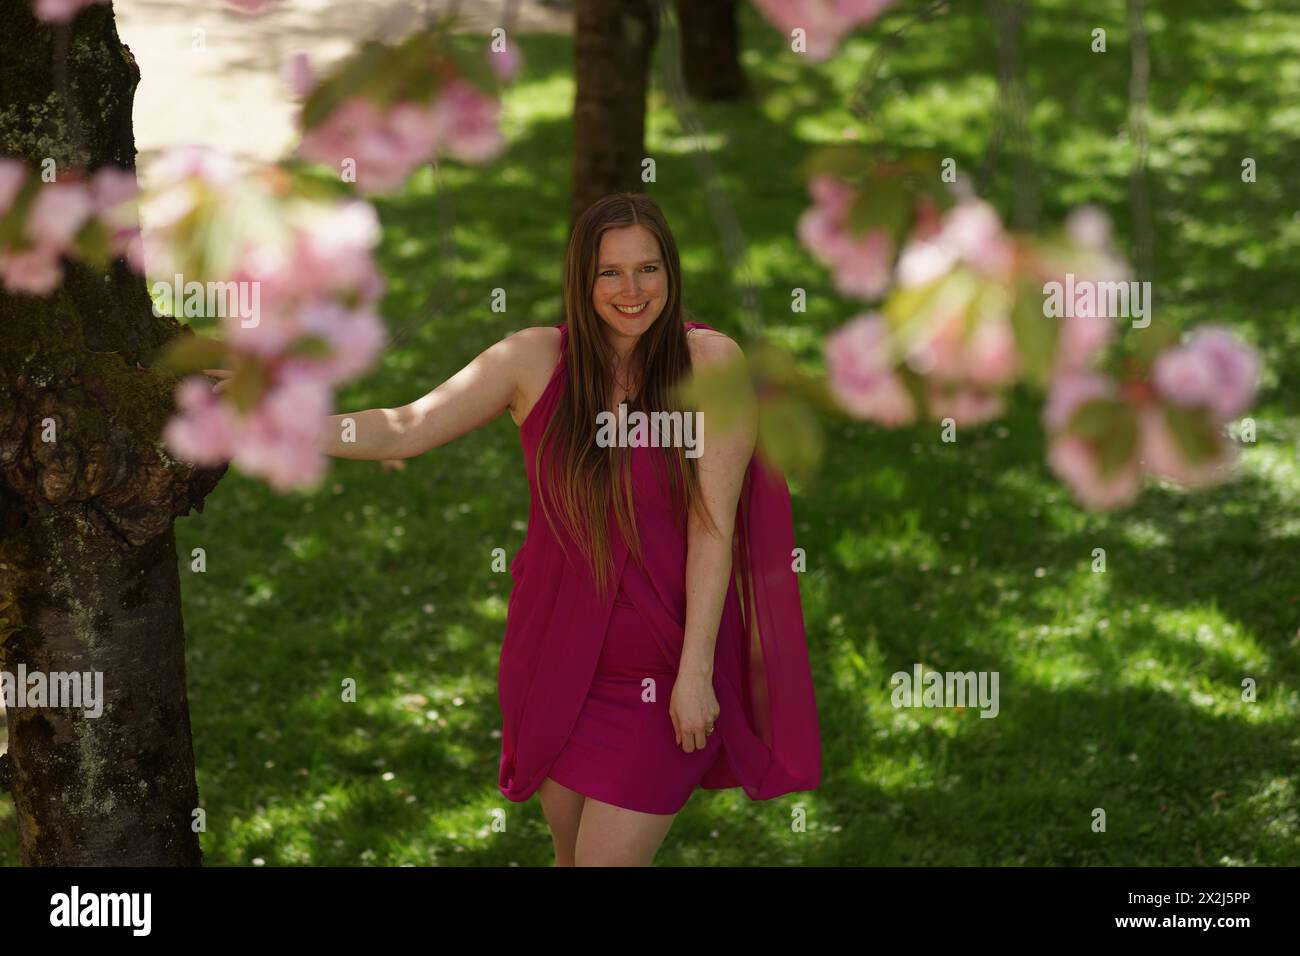 Ein Porträt einer Europäerin in einem burgunderroten Kleid, die natürlich und warm in die Kamera lächelt. Sie wird von Kirschblüten flankiert, die im Nebel verschwimmen Stockfoto